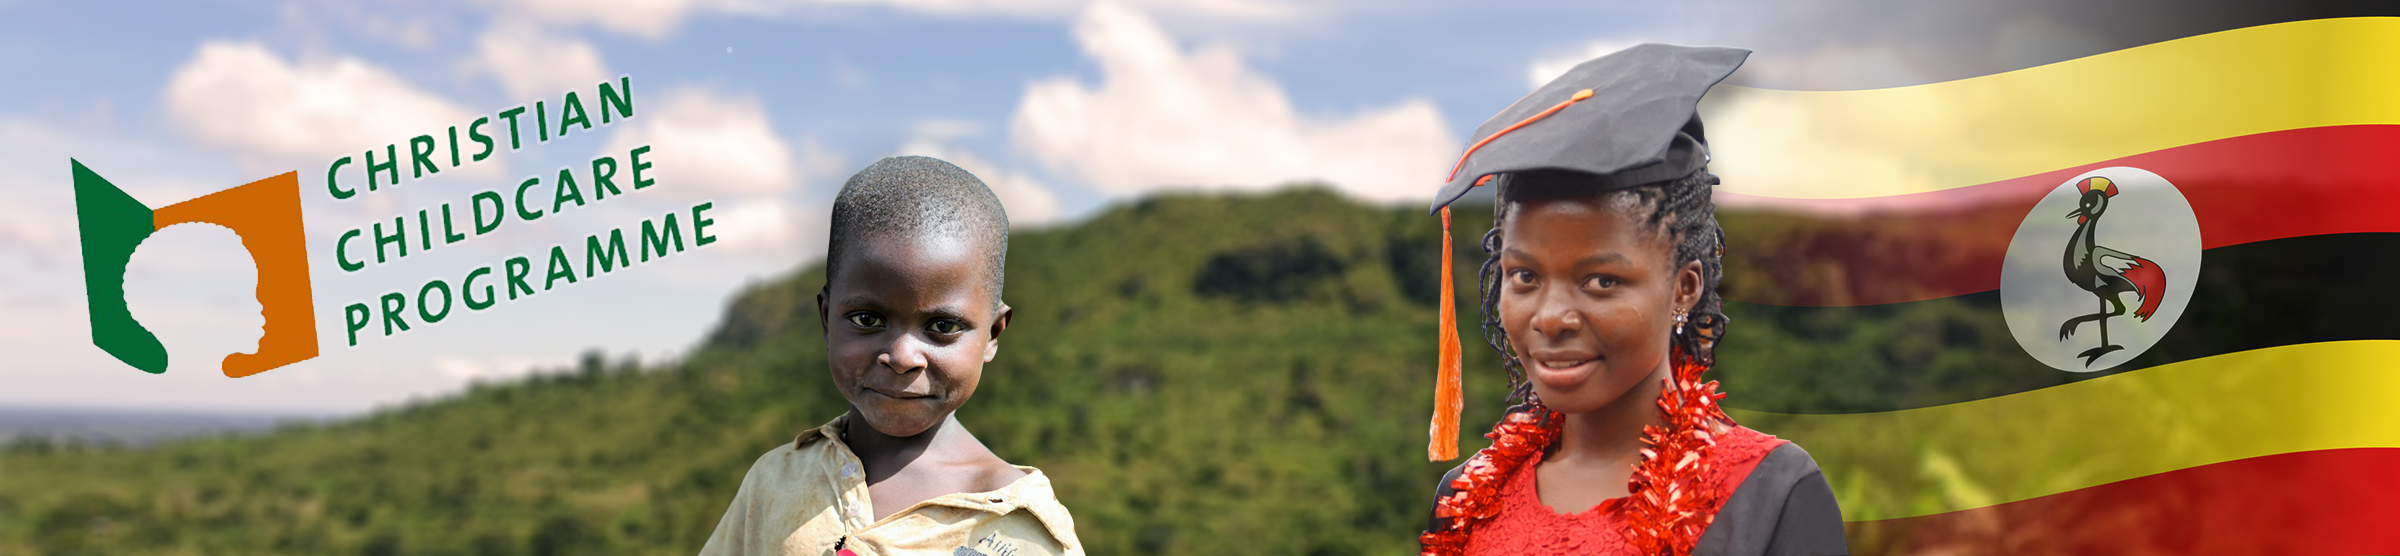 Structurele hulp aan kinderen in Uganda